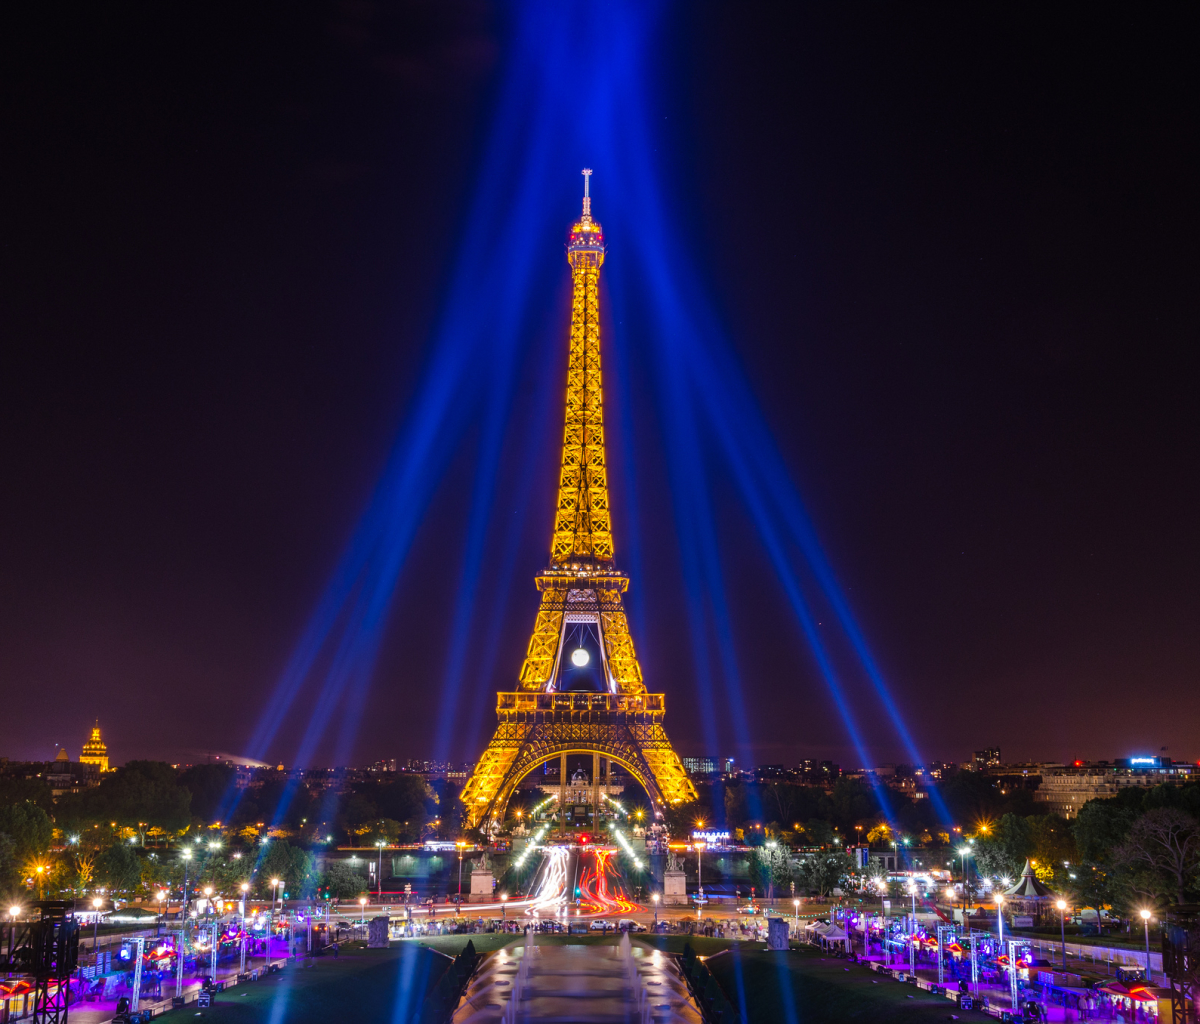 эйфелева башня в париже